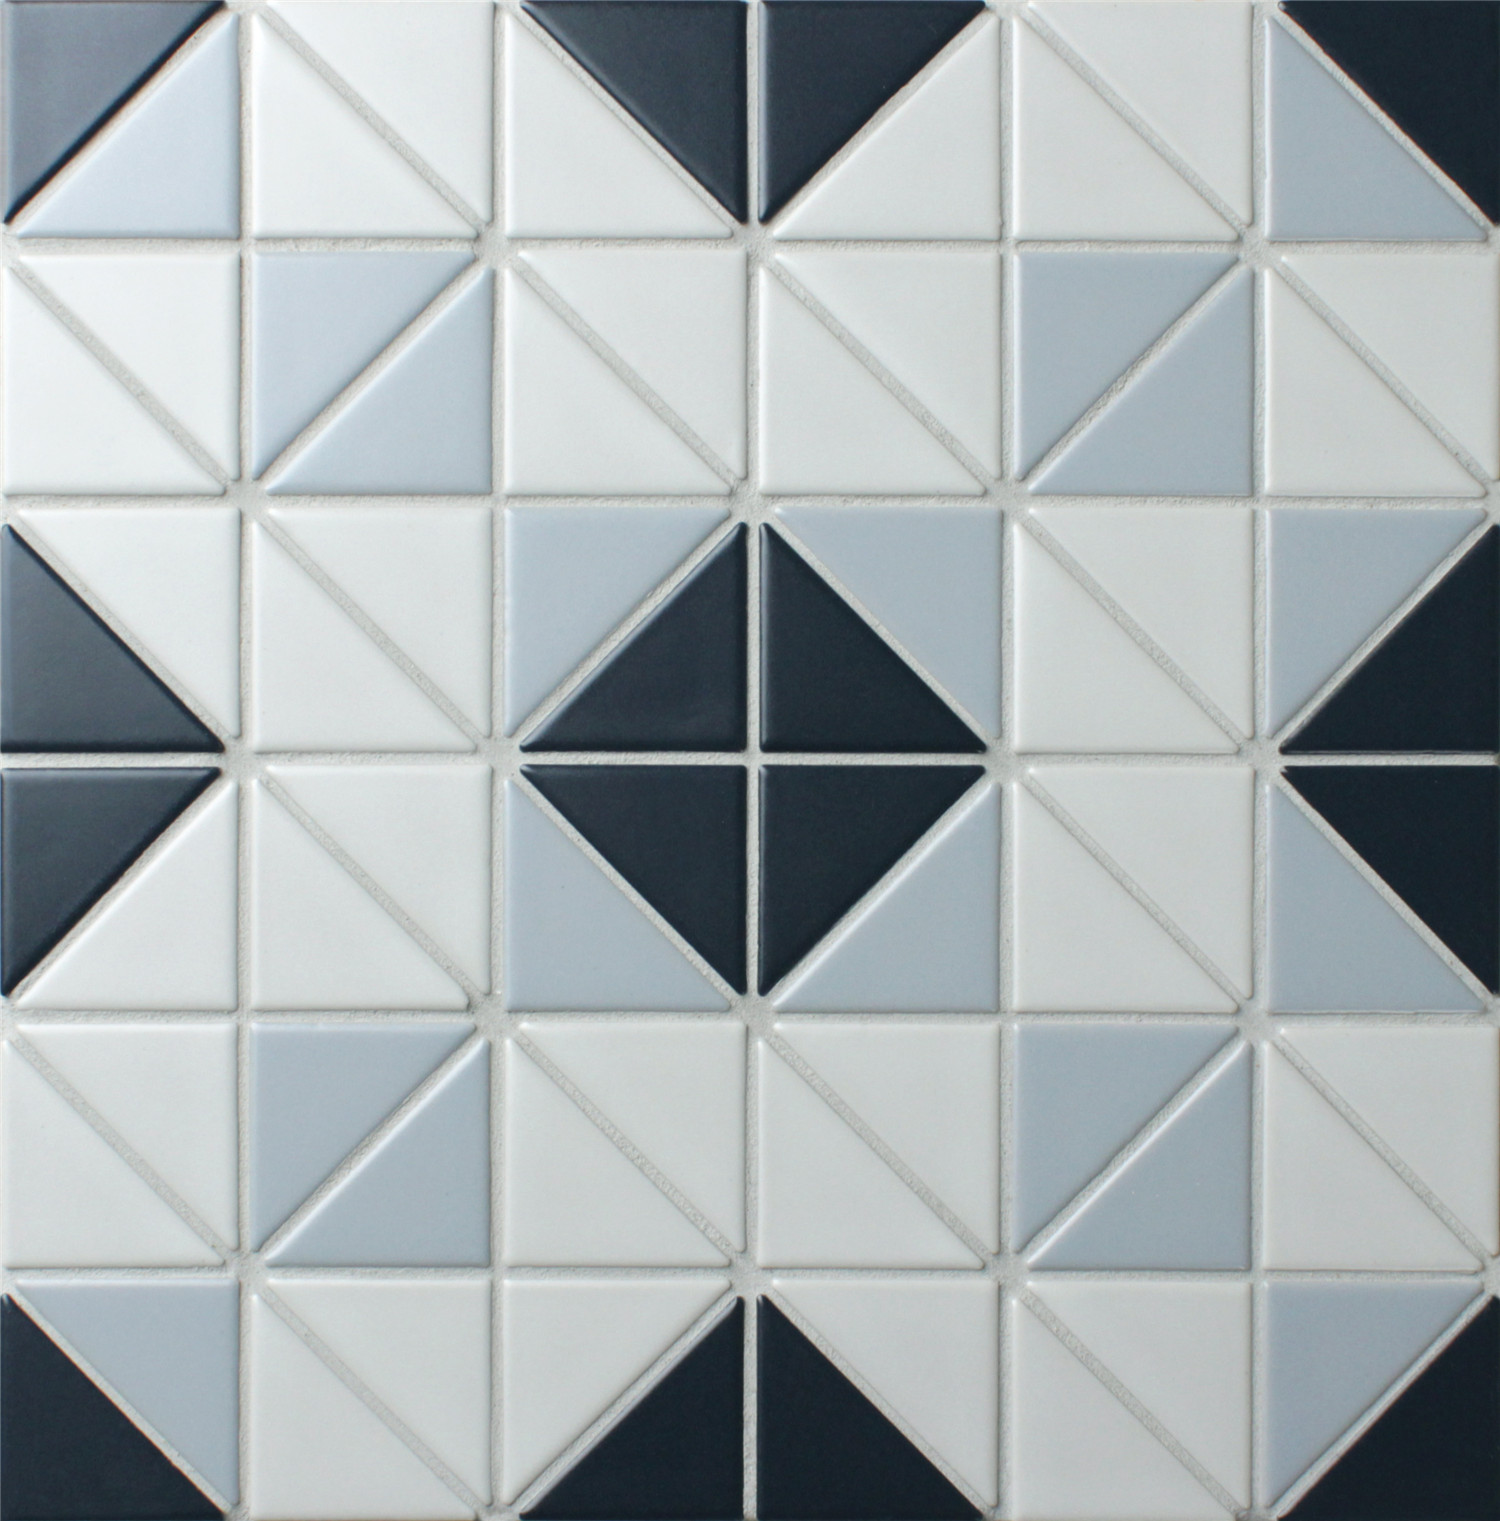 https://anttile.com/wp-content/uploads/2017/09/TR2-BLM-SQ3-geometric-shape-tiles-mosaic.jpg